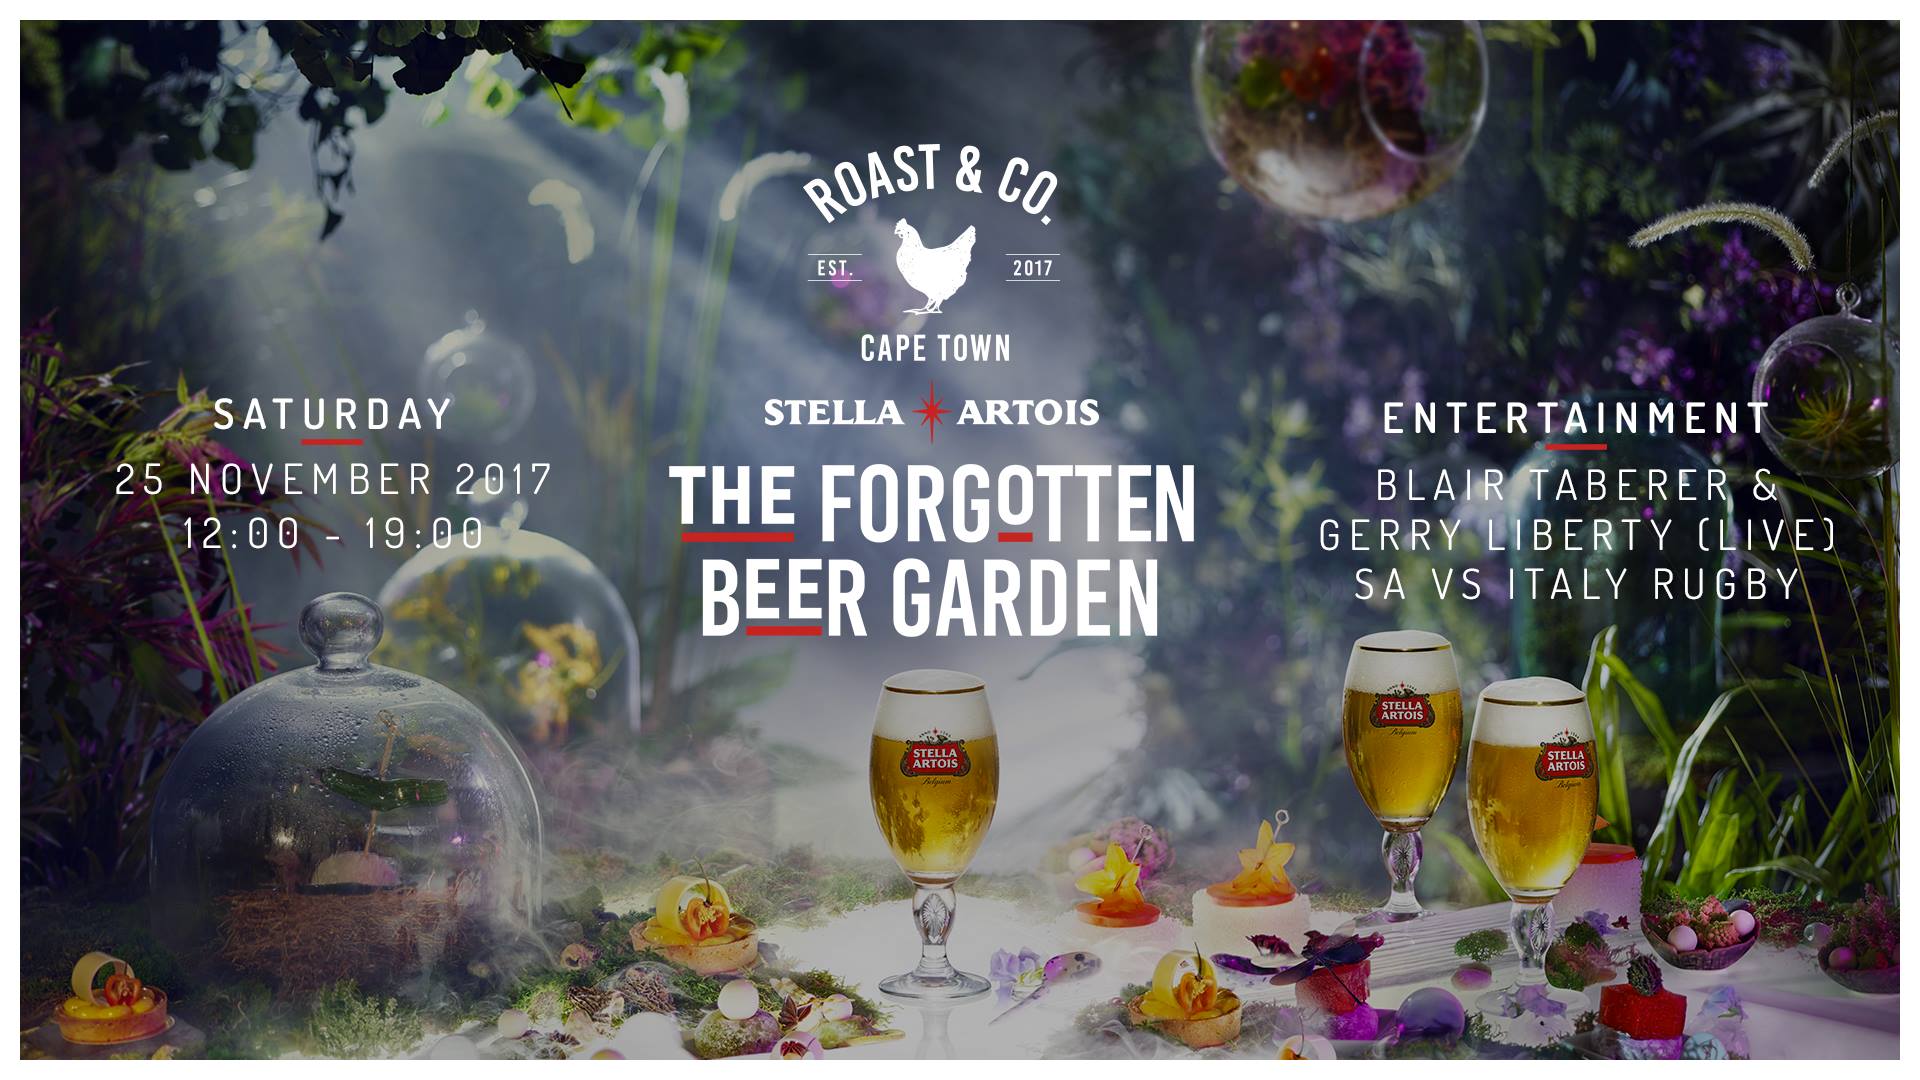 Roast Co Hosts The Forgotten Beer Garden